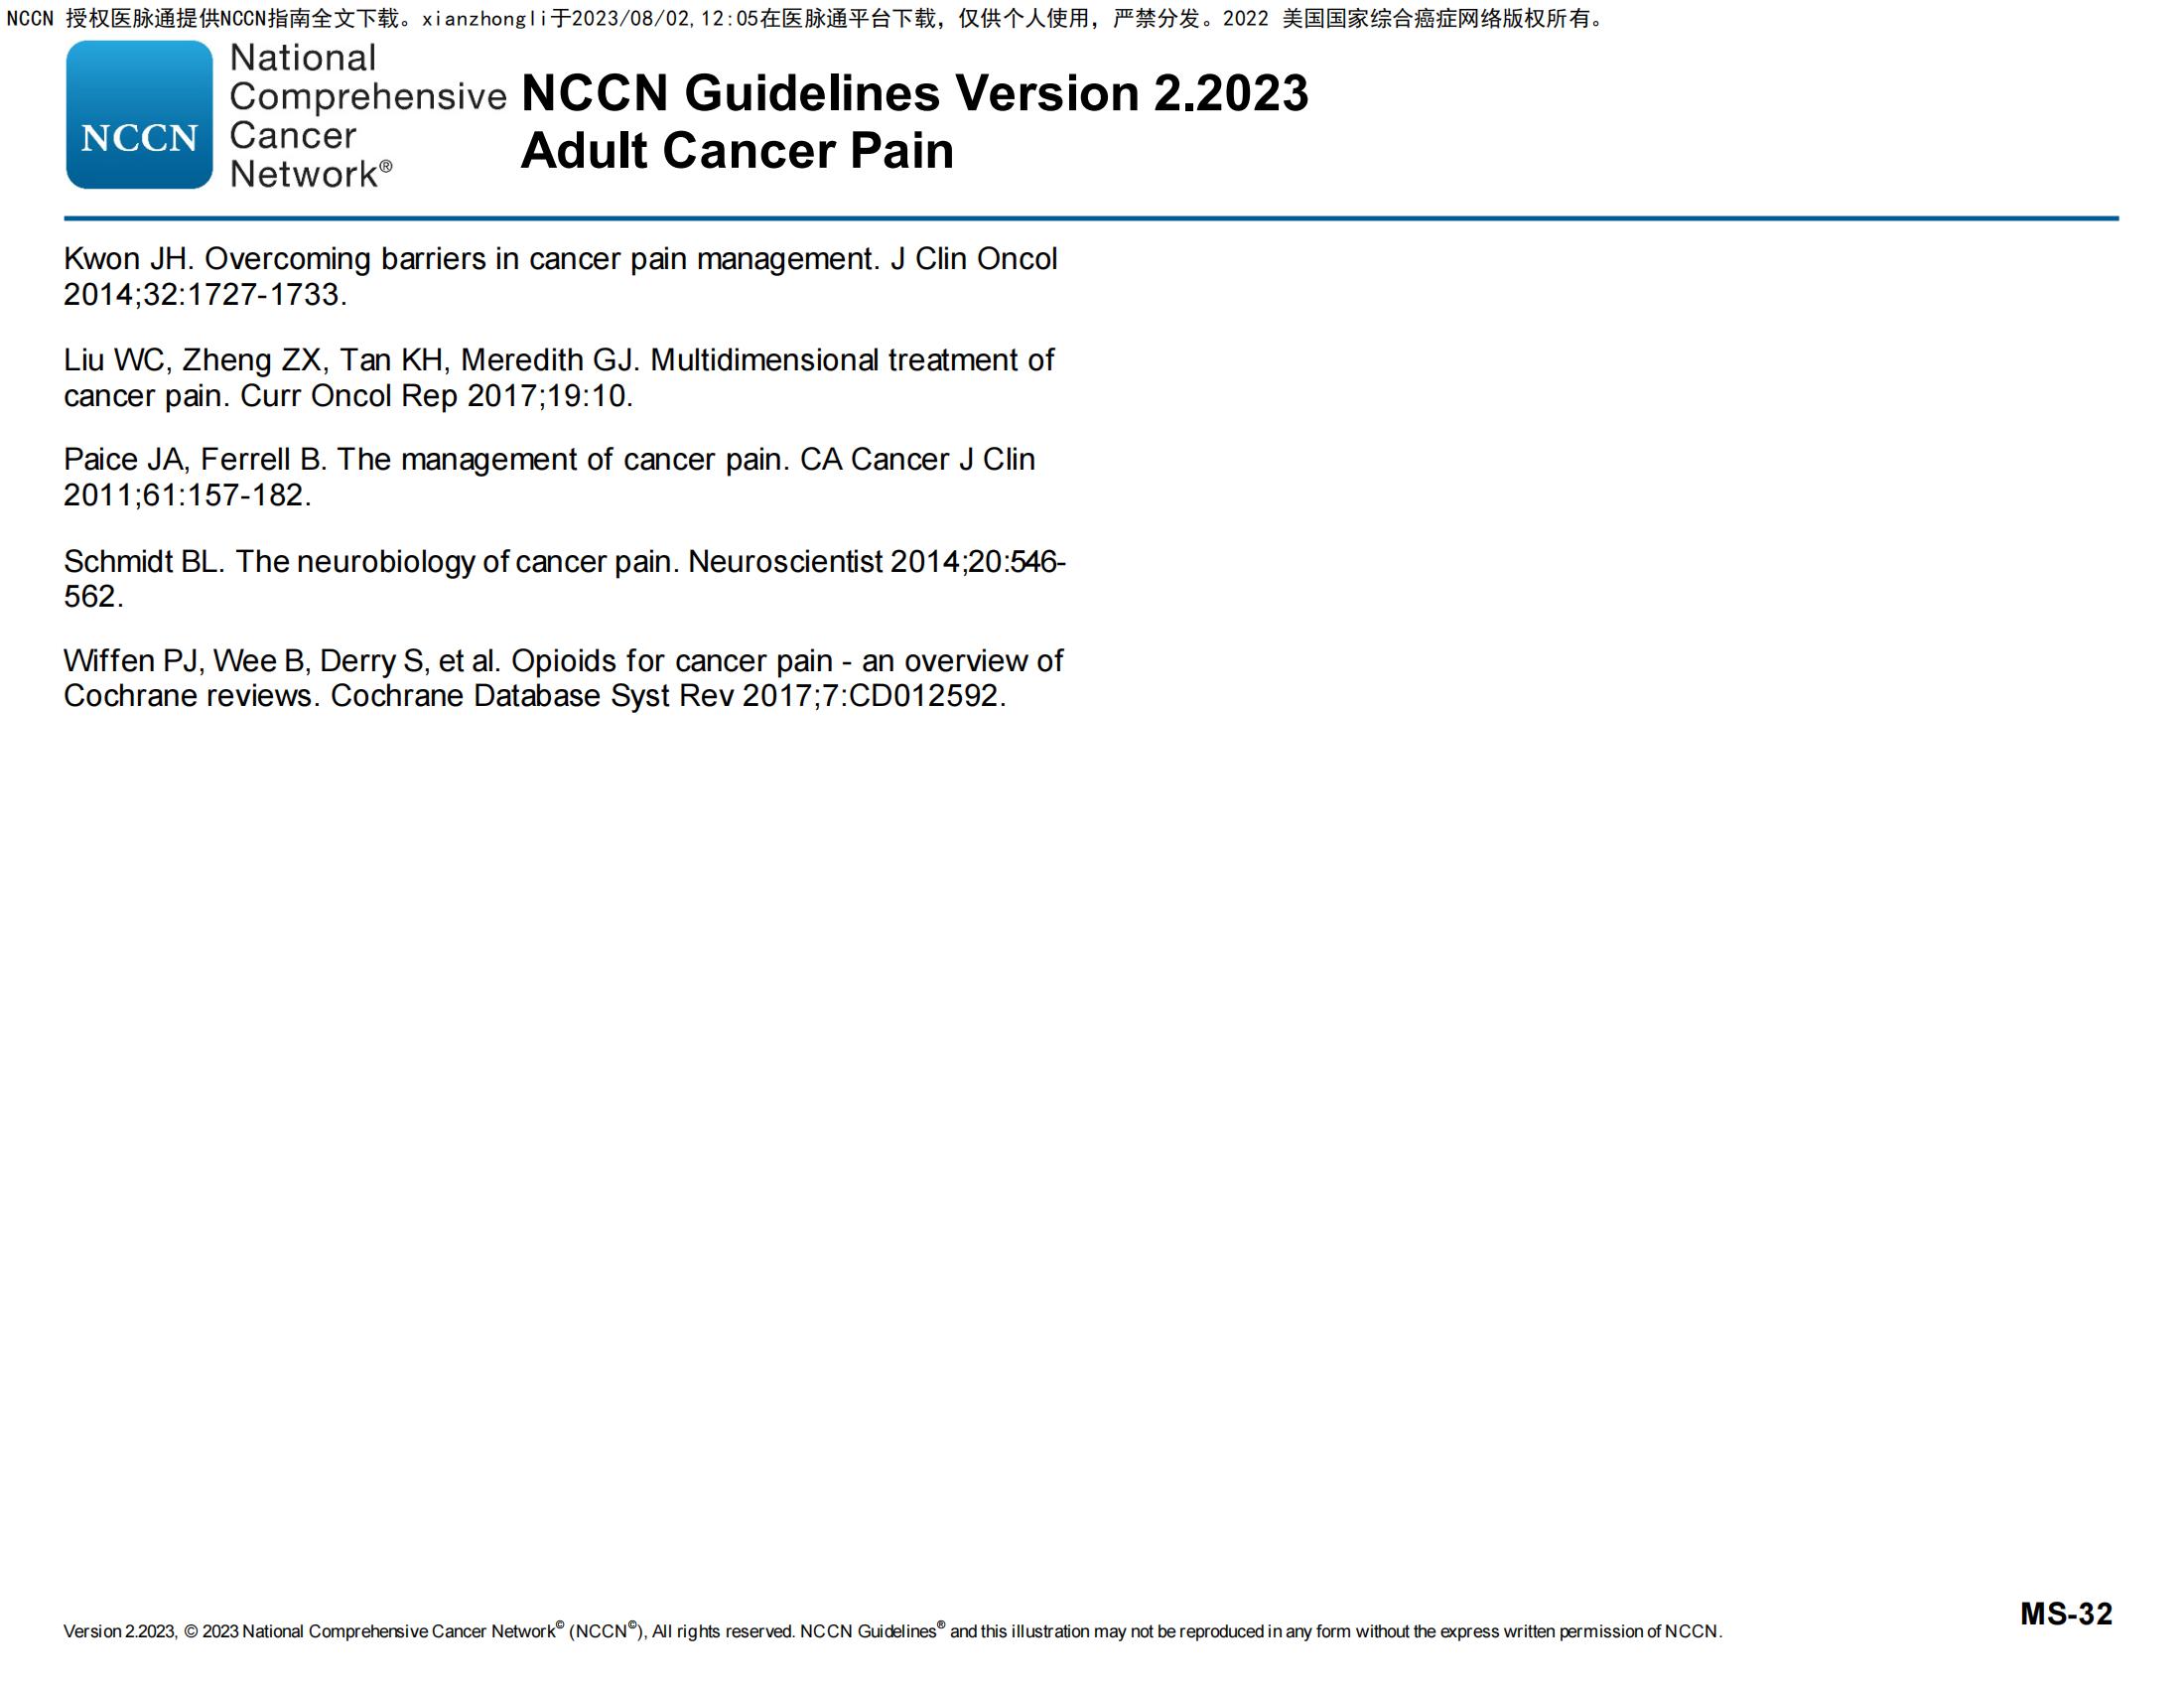 2023.V2）NCCN临床实践指南：成人癌痛（英文版）_指南•规范•共识_药讯 